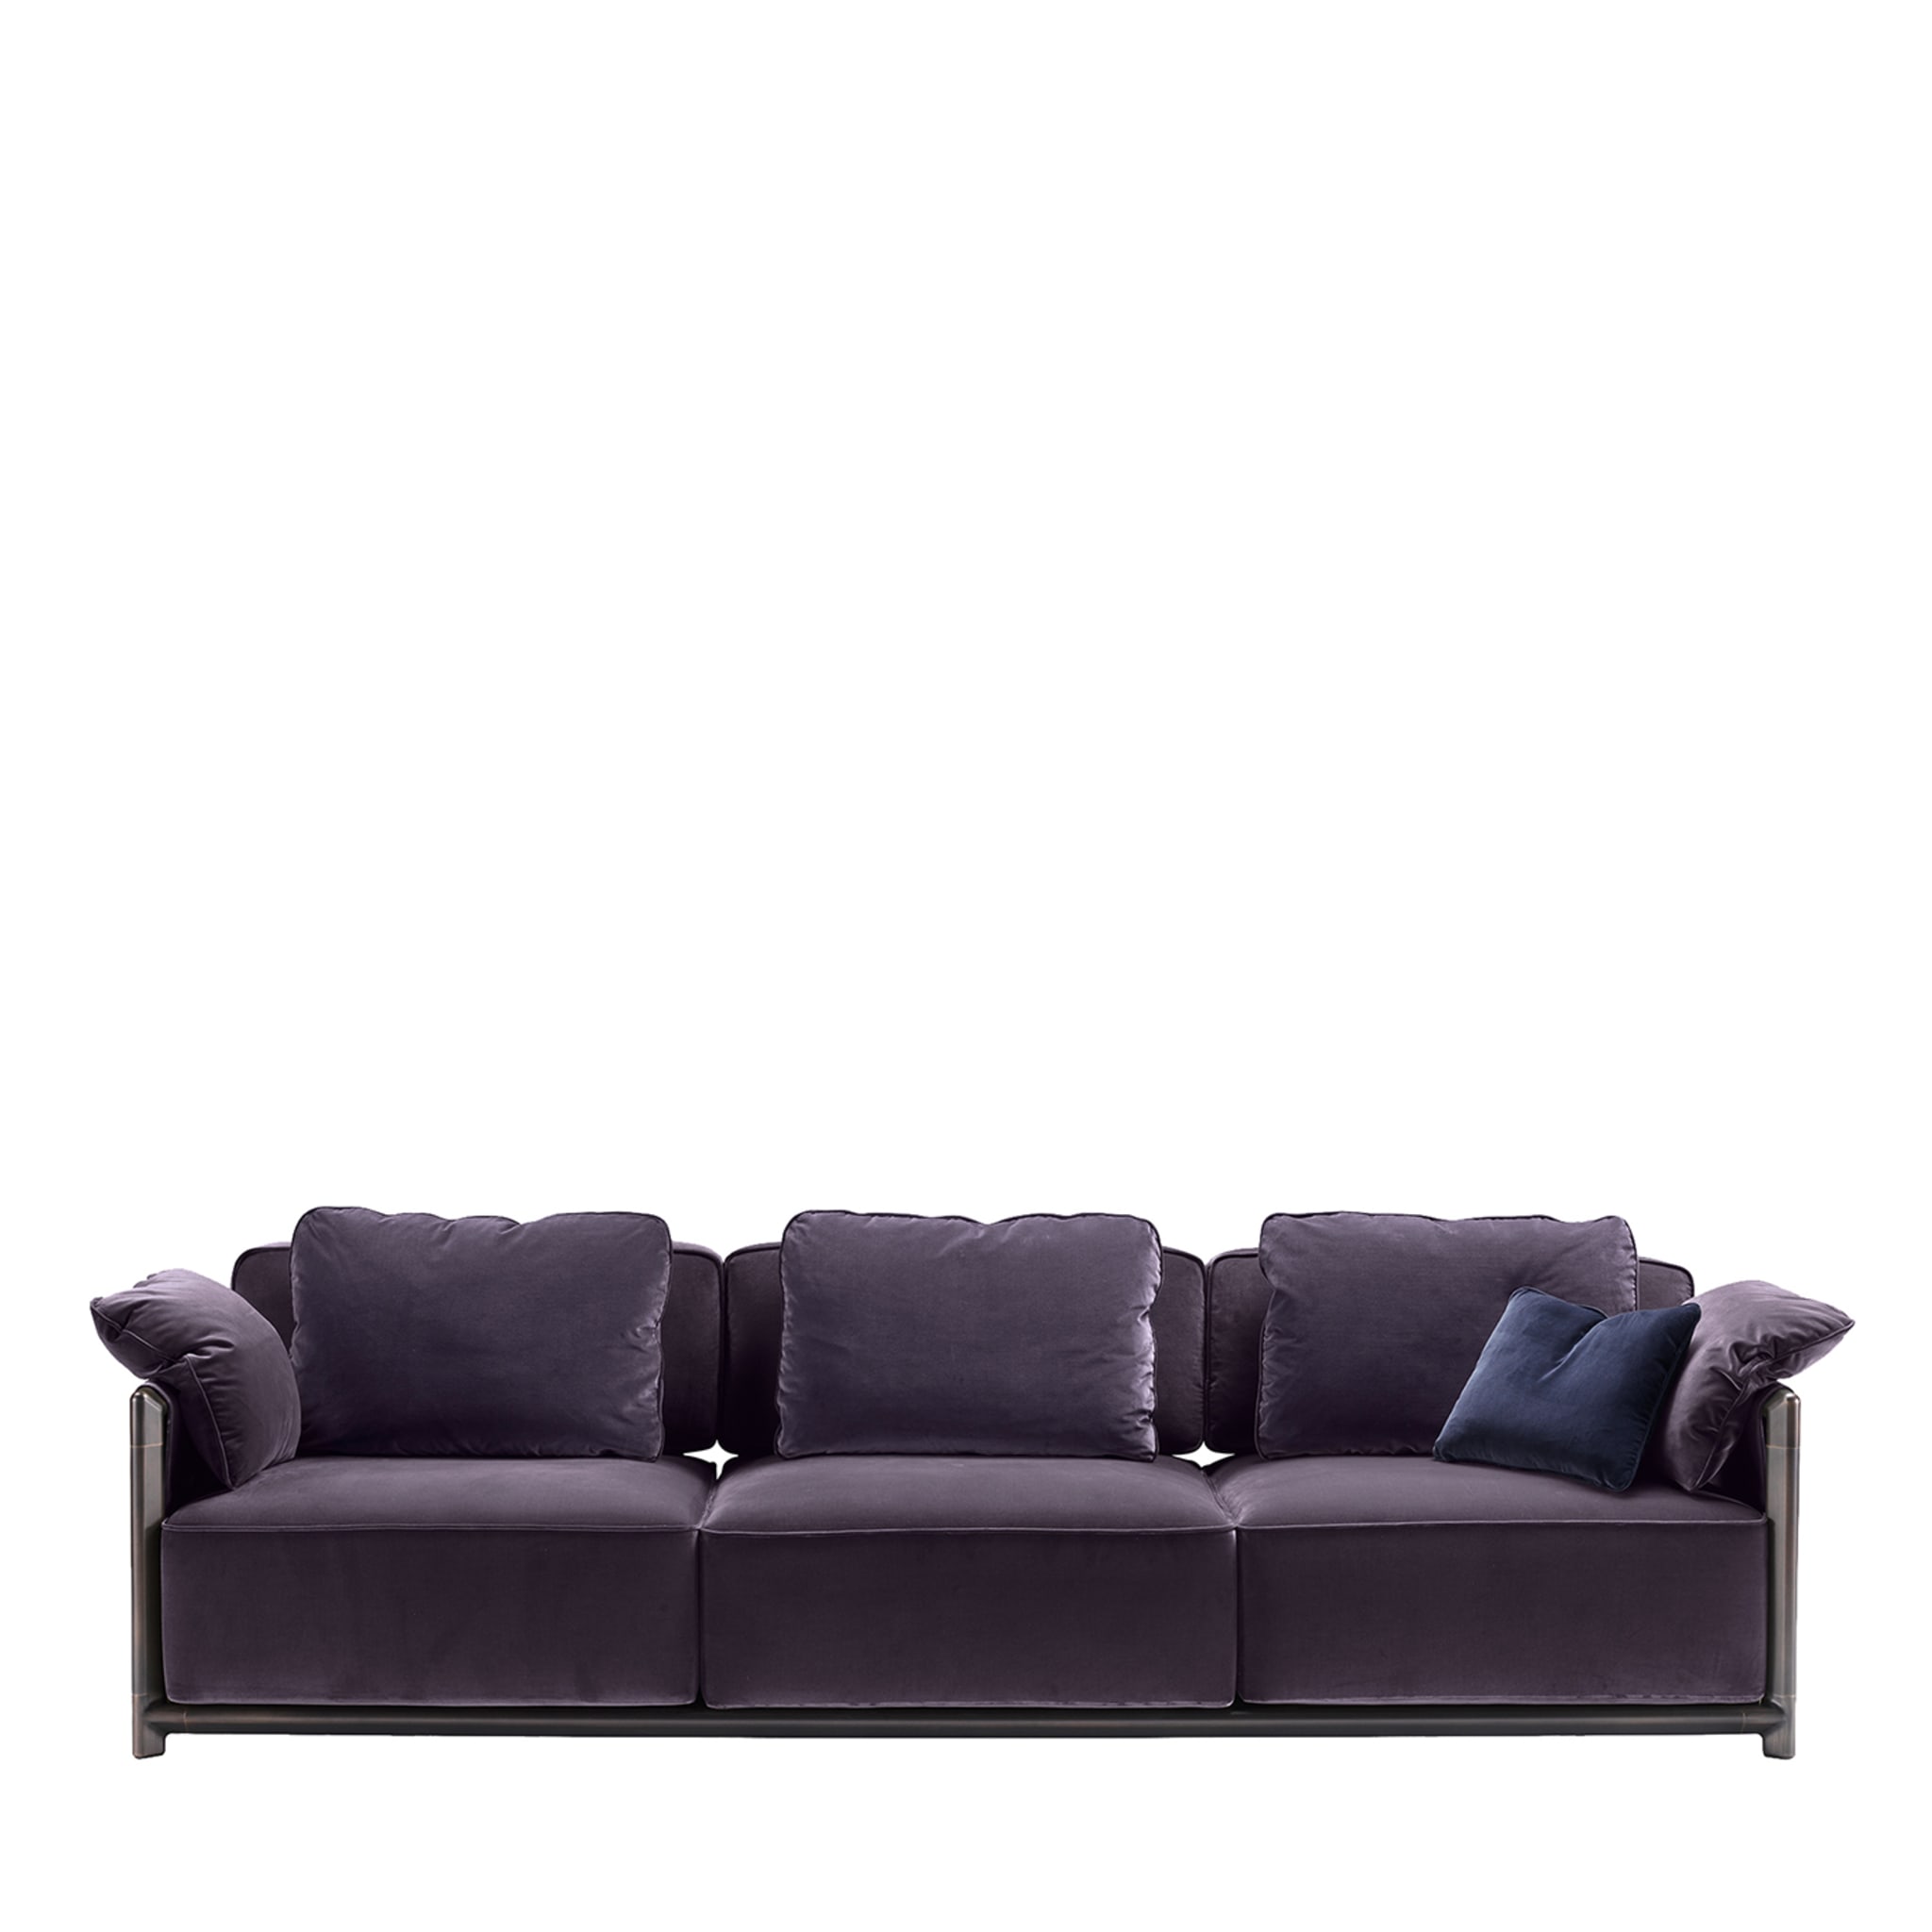 Dodo Purple Sofa by Stefano Giovannoni - Main view